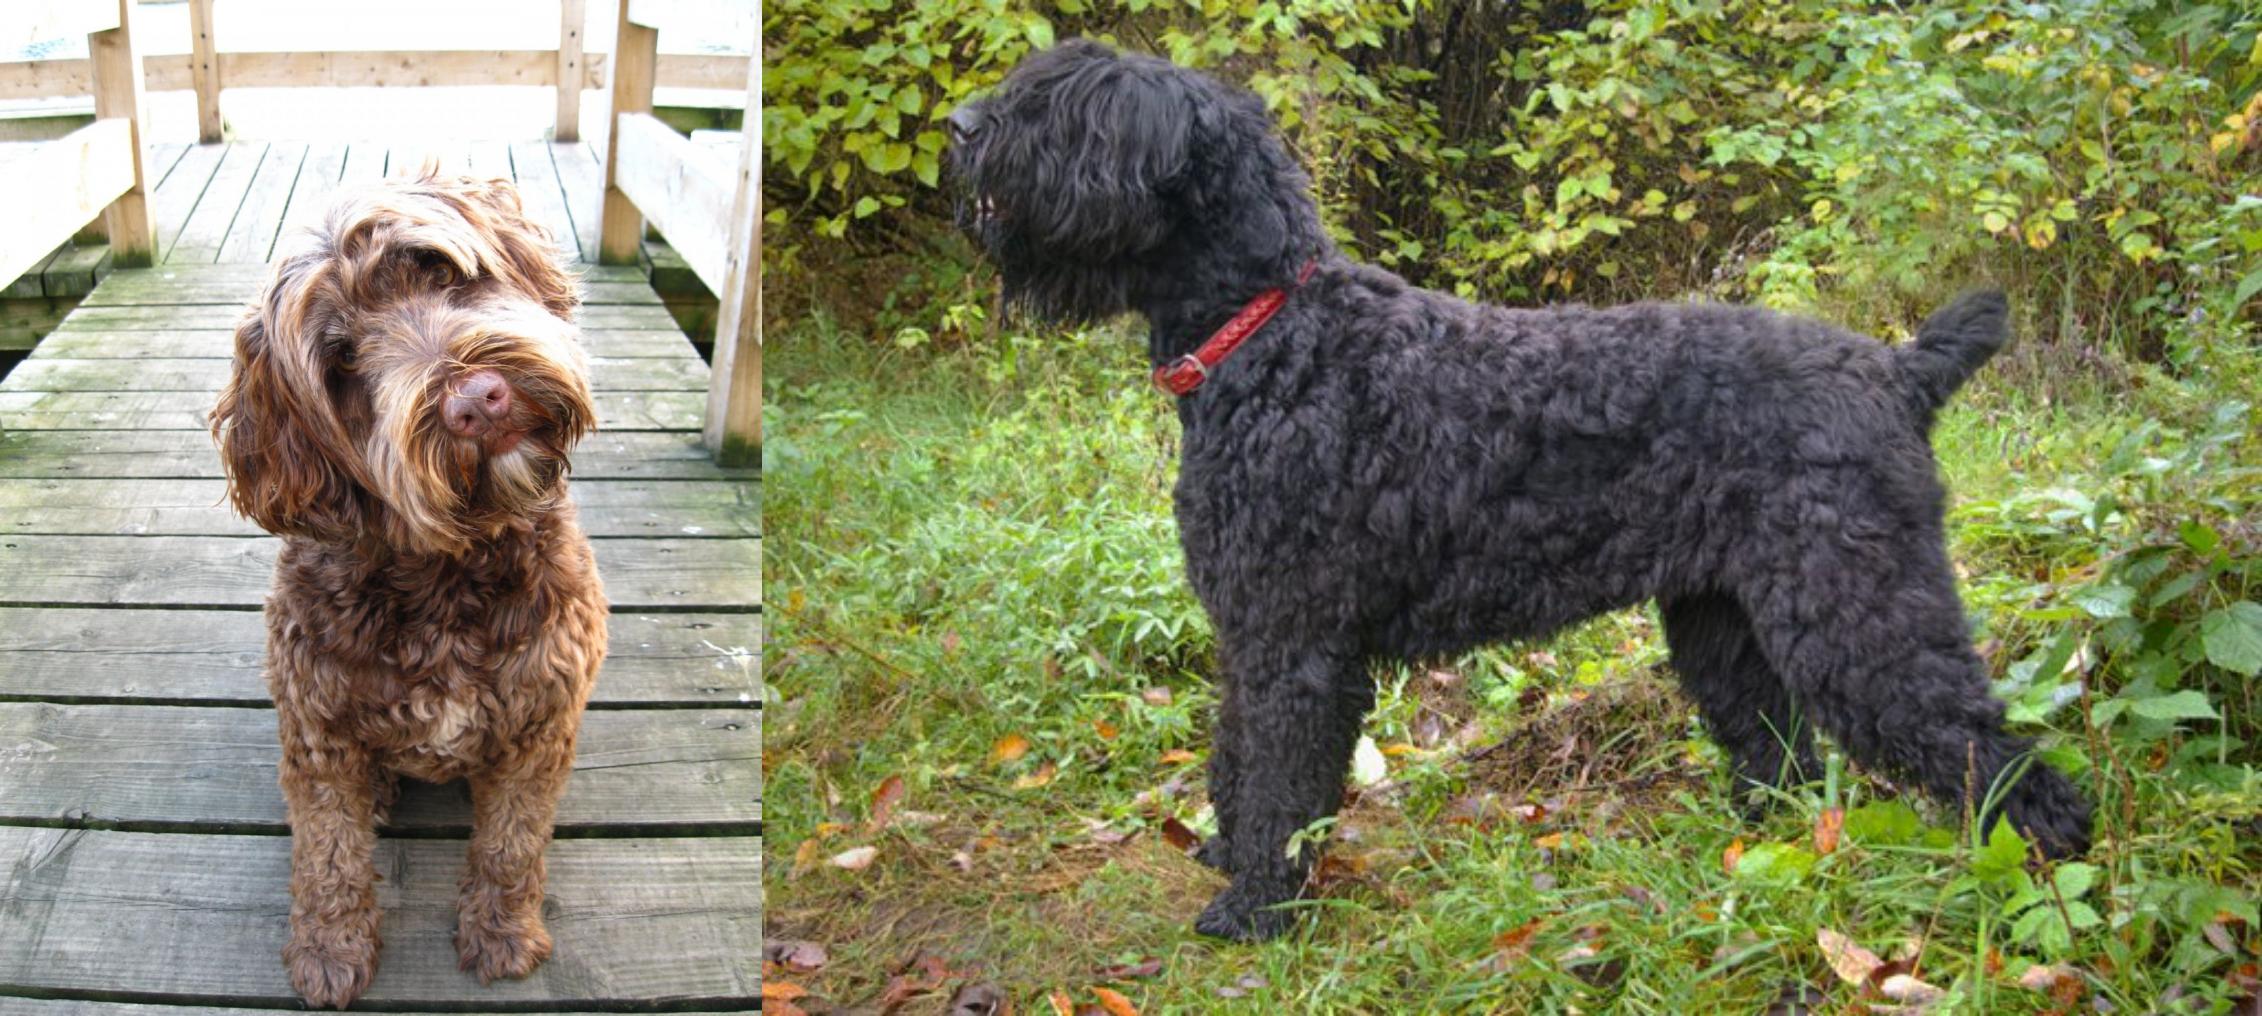 Portuguese Water Dog Vs Black Russian Terrier Breed Comparison